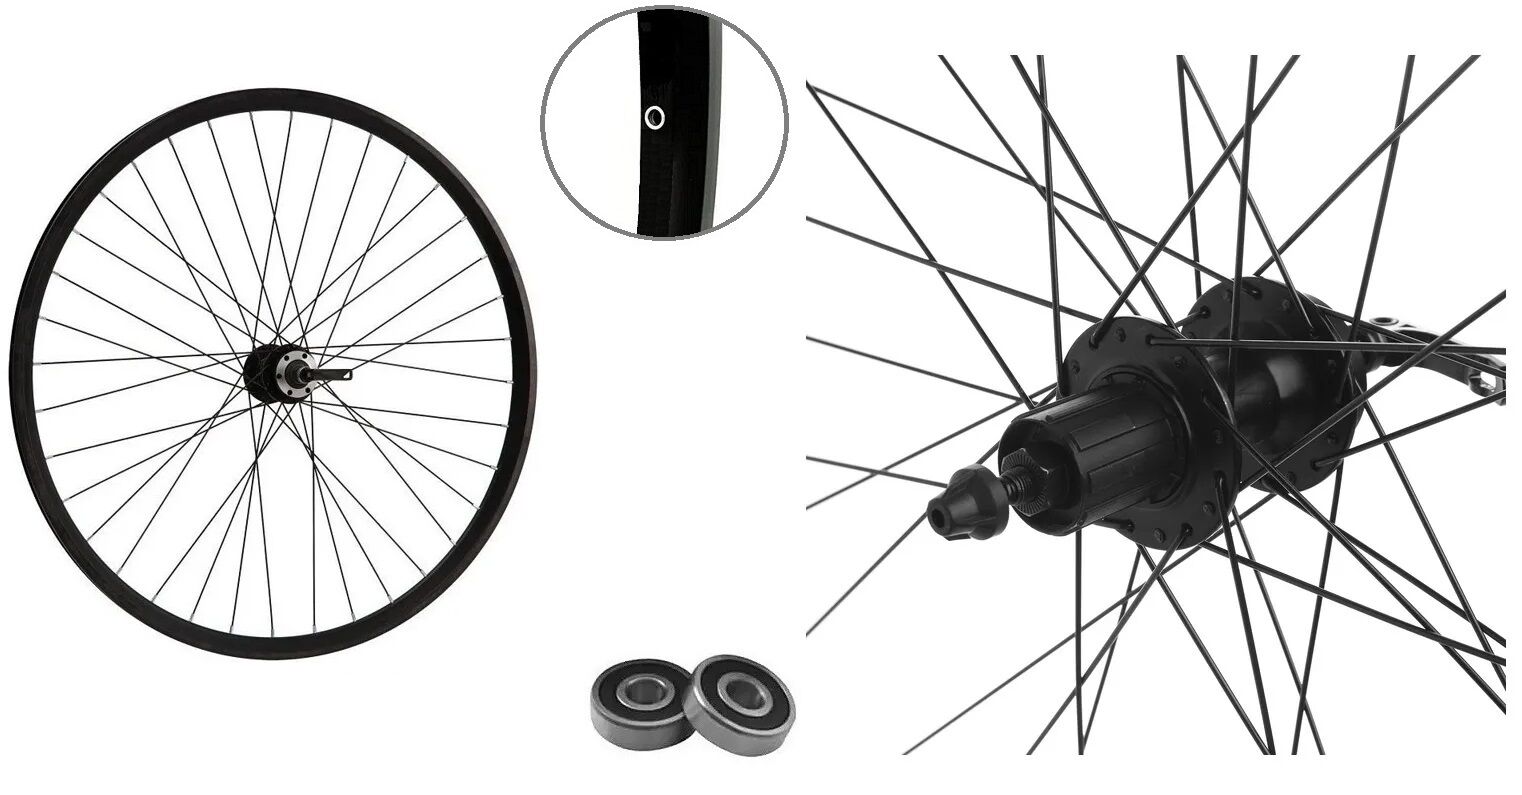 Фото выбрать и купить колесо 29" заднее, алюминиевая втулка wz-a282rb на промподшипниках, дисковая (6 винтов) под кассету 8-10 ск., эксцентрик, пистонированный двустеночный обод (wsm-29rdp-qr-ahfb) для велосипедов со склада в СПб - большой выбор для взрослого, запчасти для велосипедов в наличии - интернет-магазин Мастерская Тимура